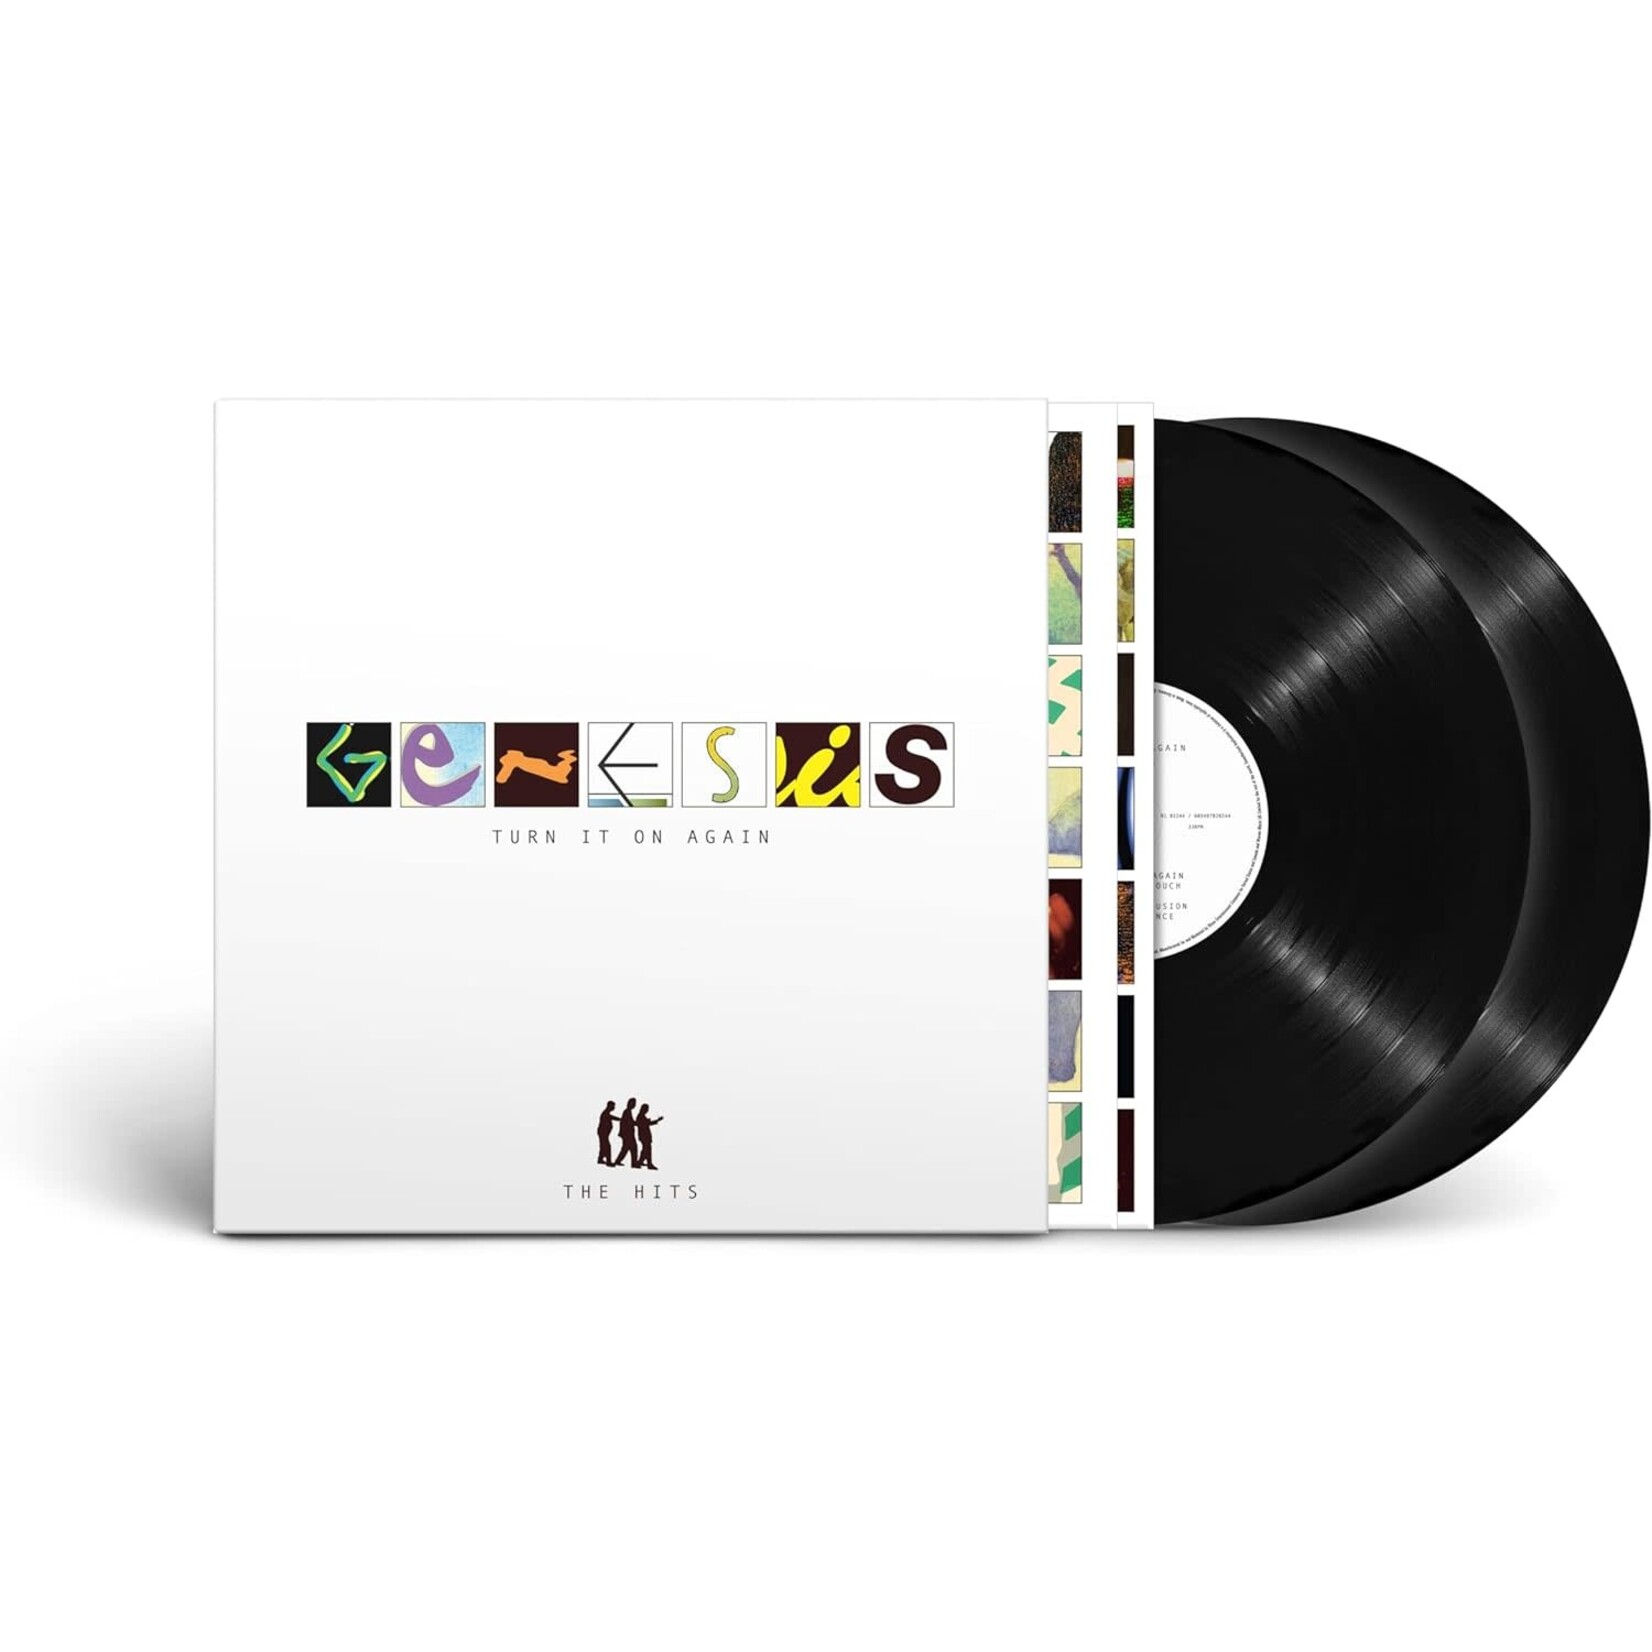 Vinyl Genesis - Turn it On Again : The Hits. 2LP